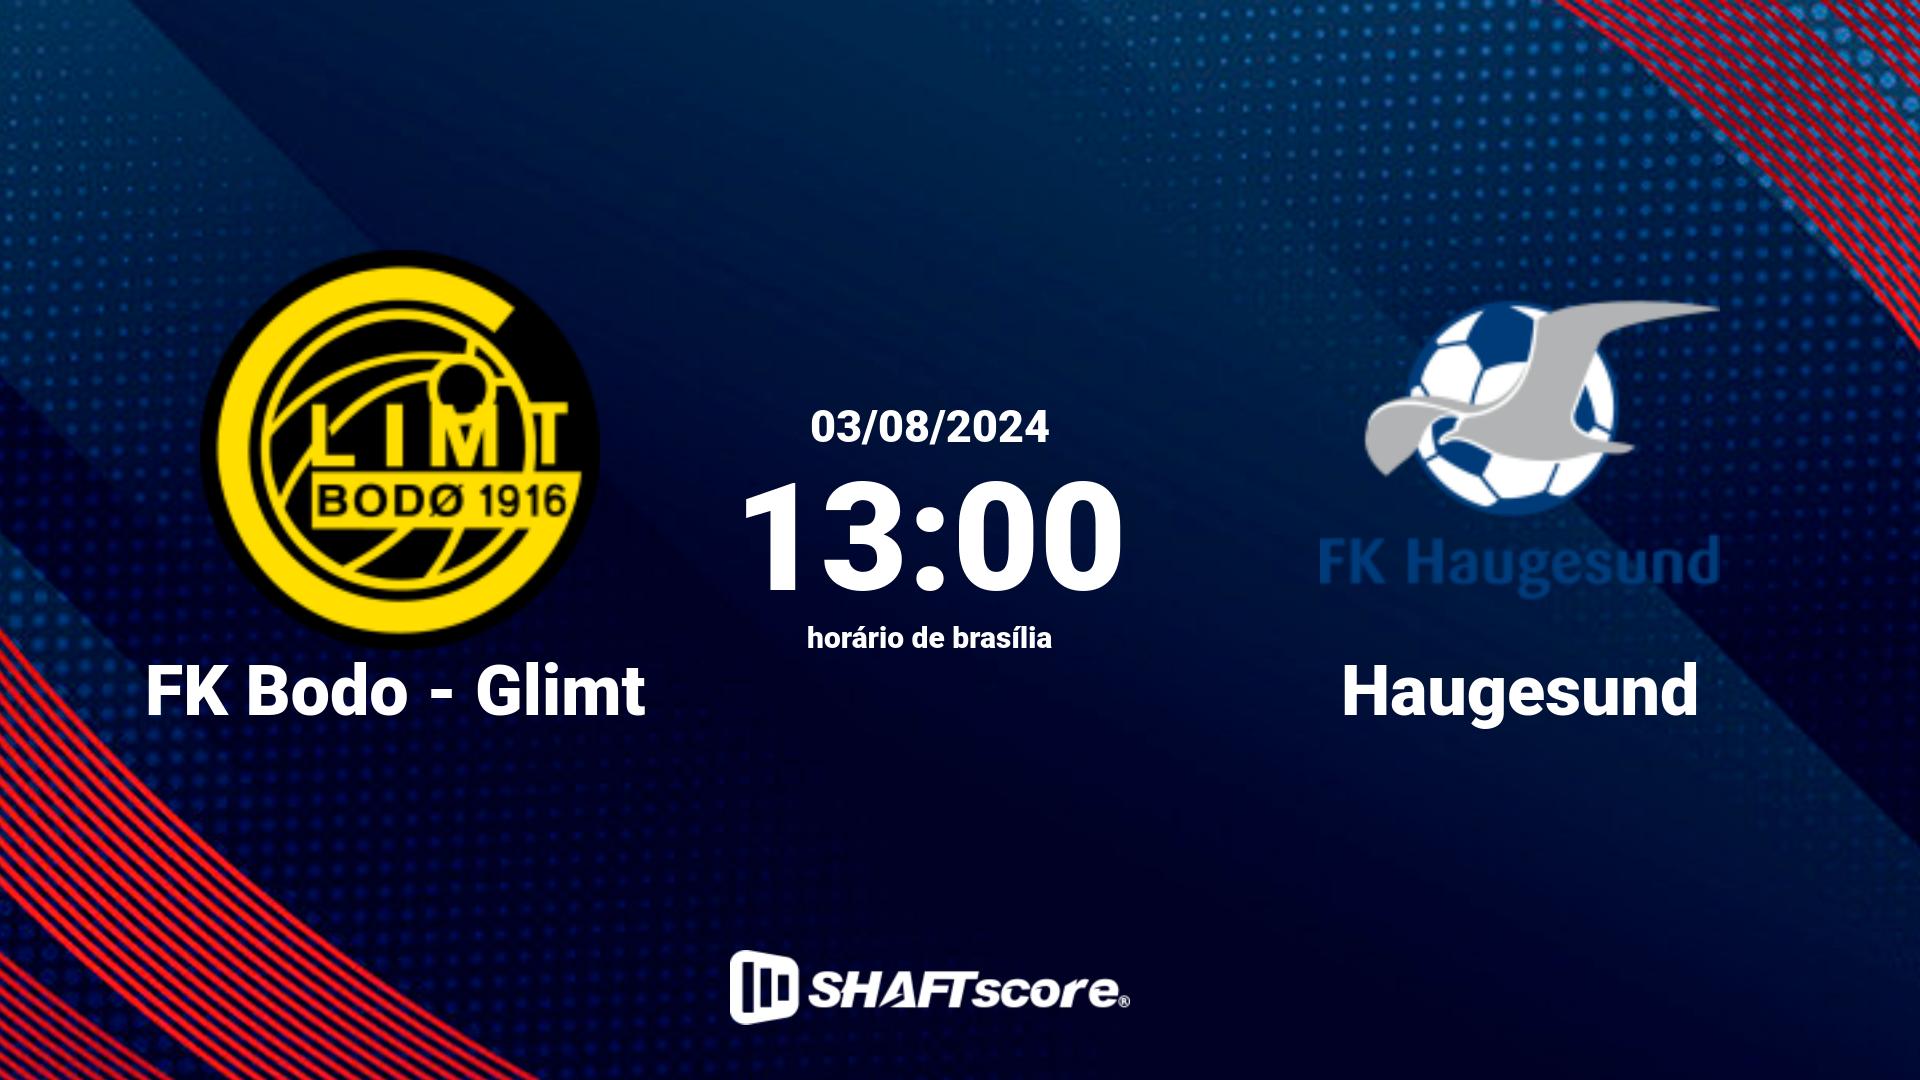 Estatísticas do jogo FK Bodo - Glimt vs Haugesund 03.08 13:00